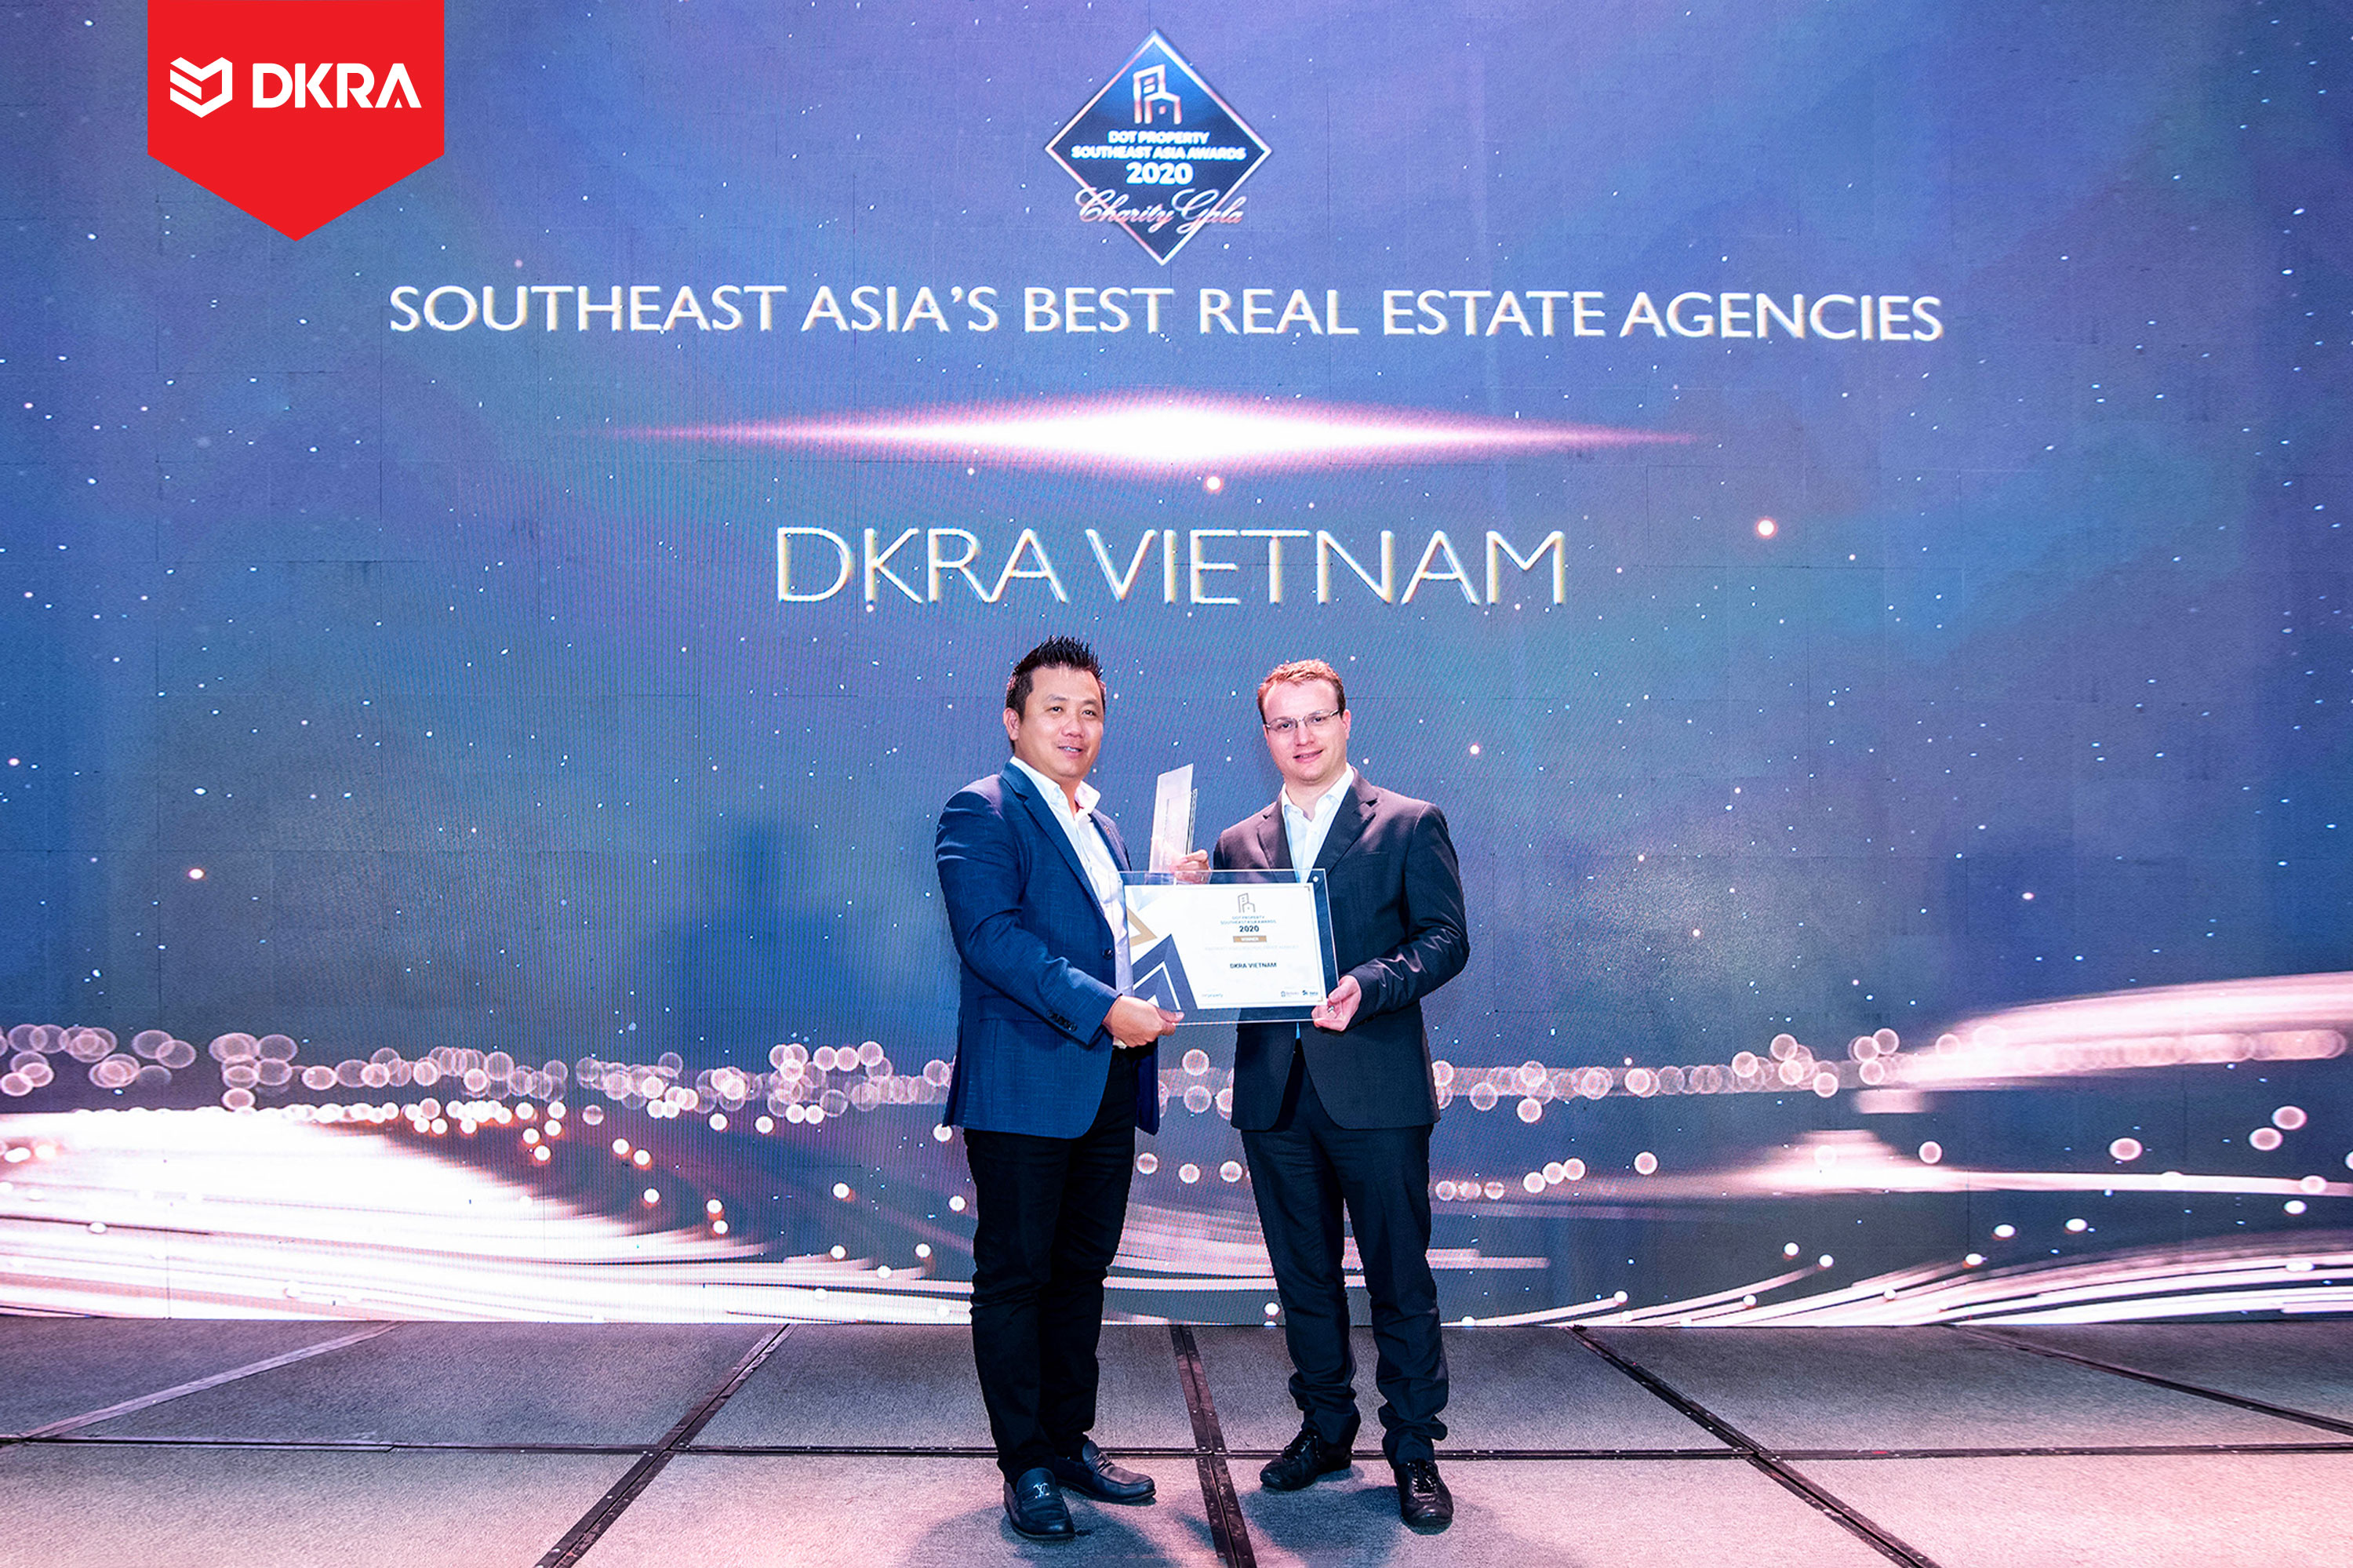 DKRA Vietnam “Đơn vị phân phối bất động sản tốt nhất Đông Nam Á” do Dot Property Southest Asia Awards trao tặng 2019 và 2020